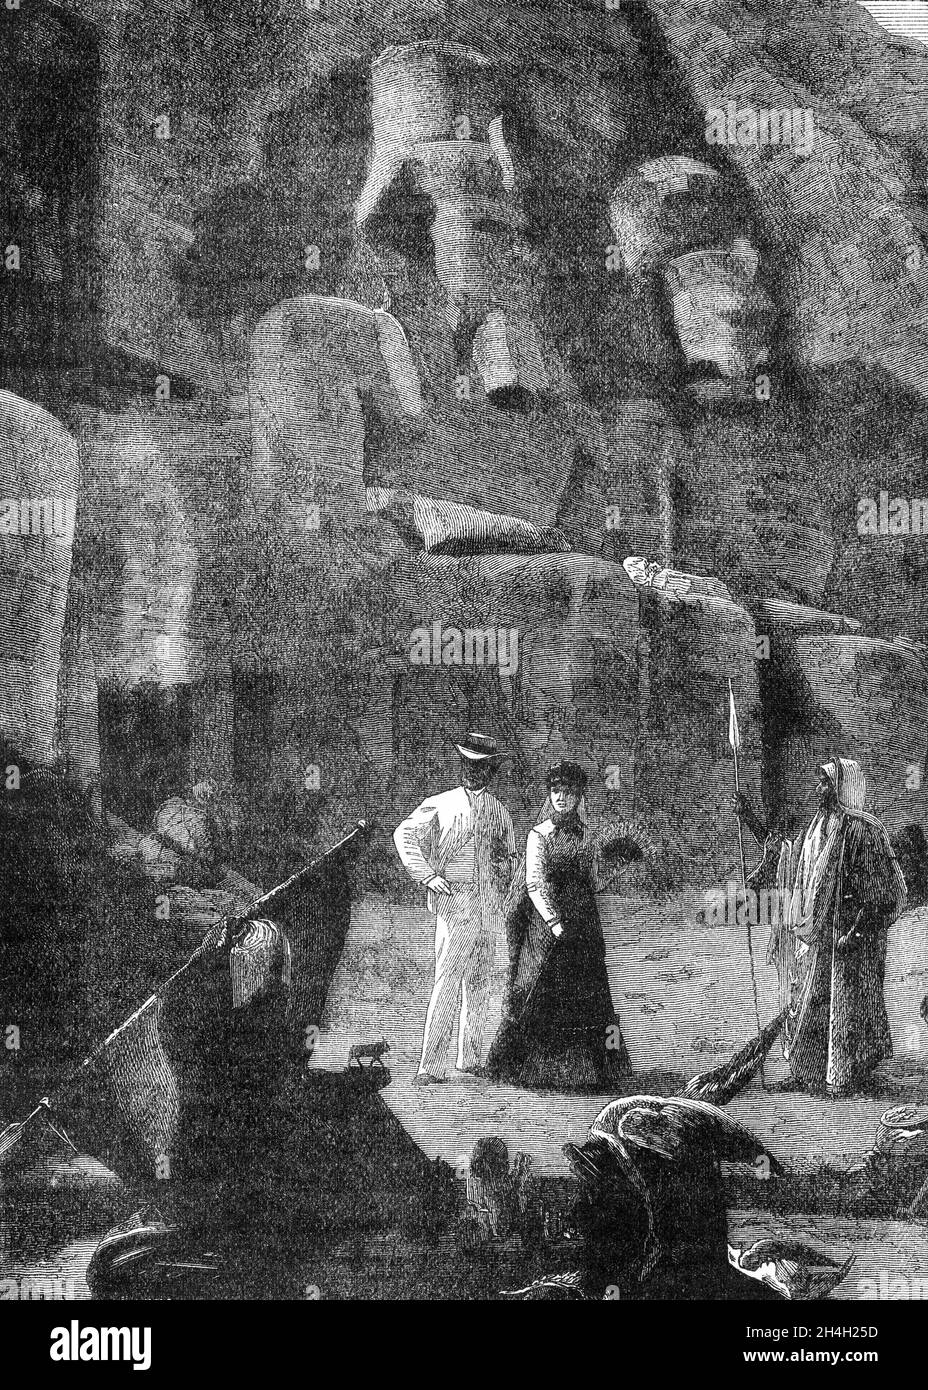 Gravure des ruines de Thèbes en Egypte, d'une publication vers 1880 Banque D'Images